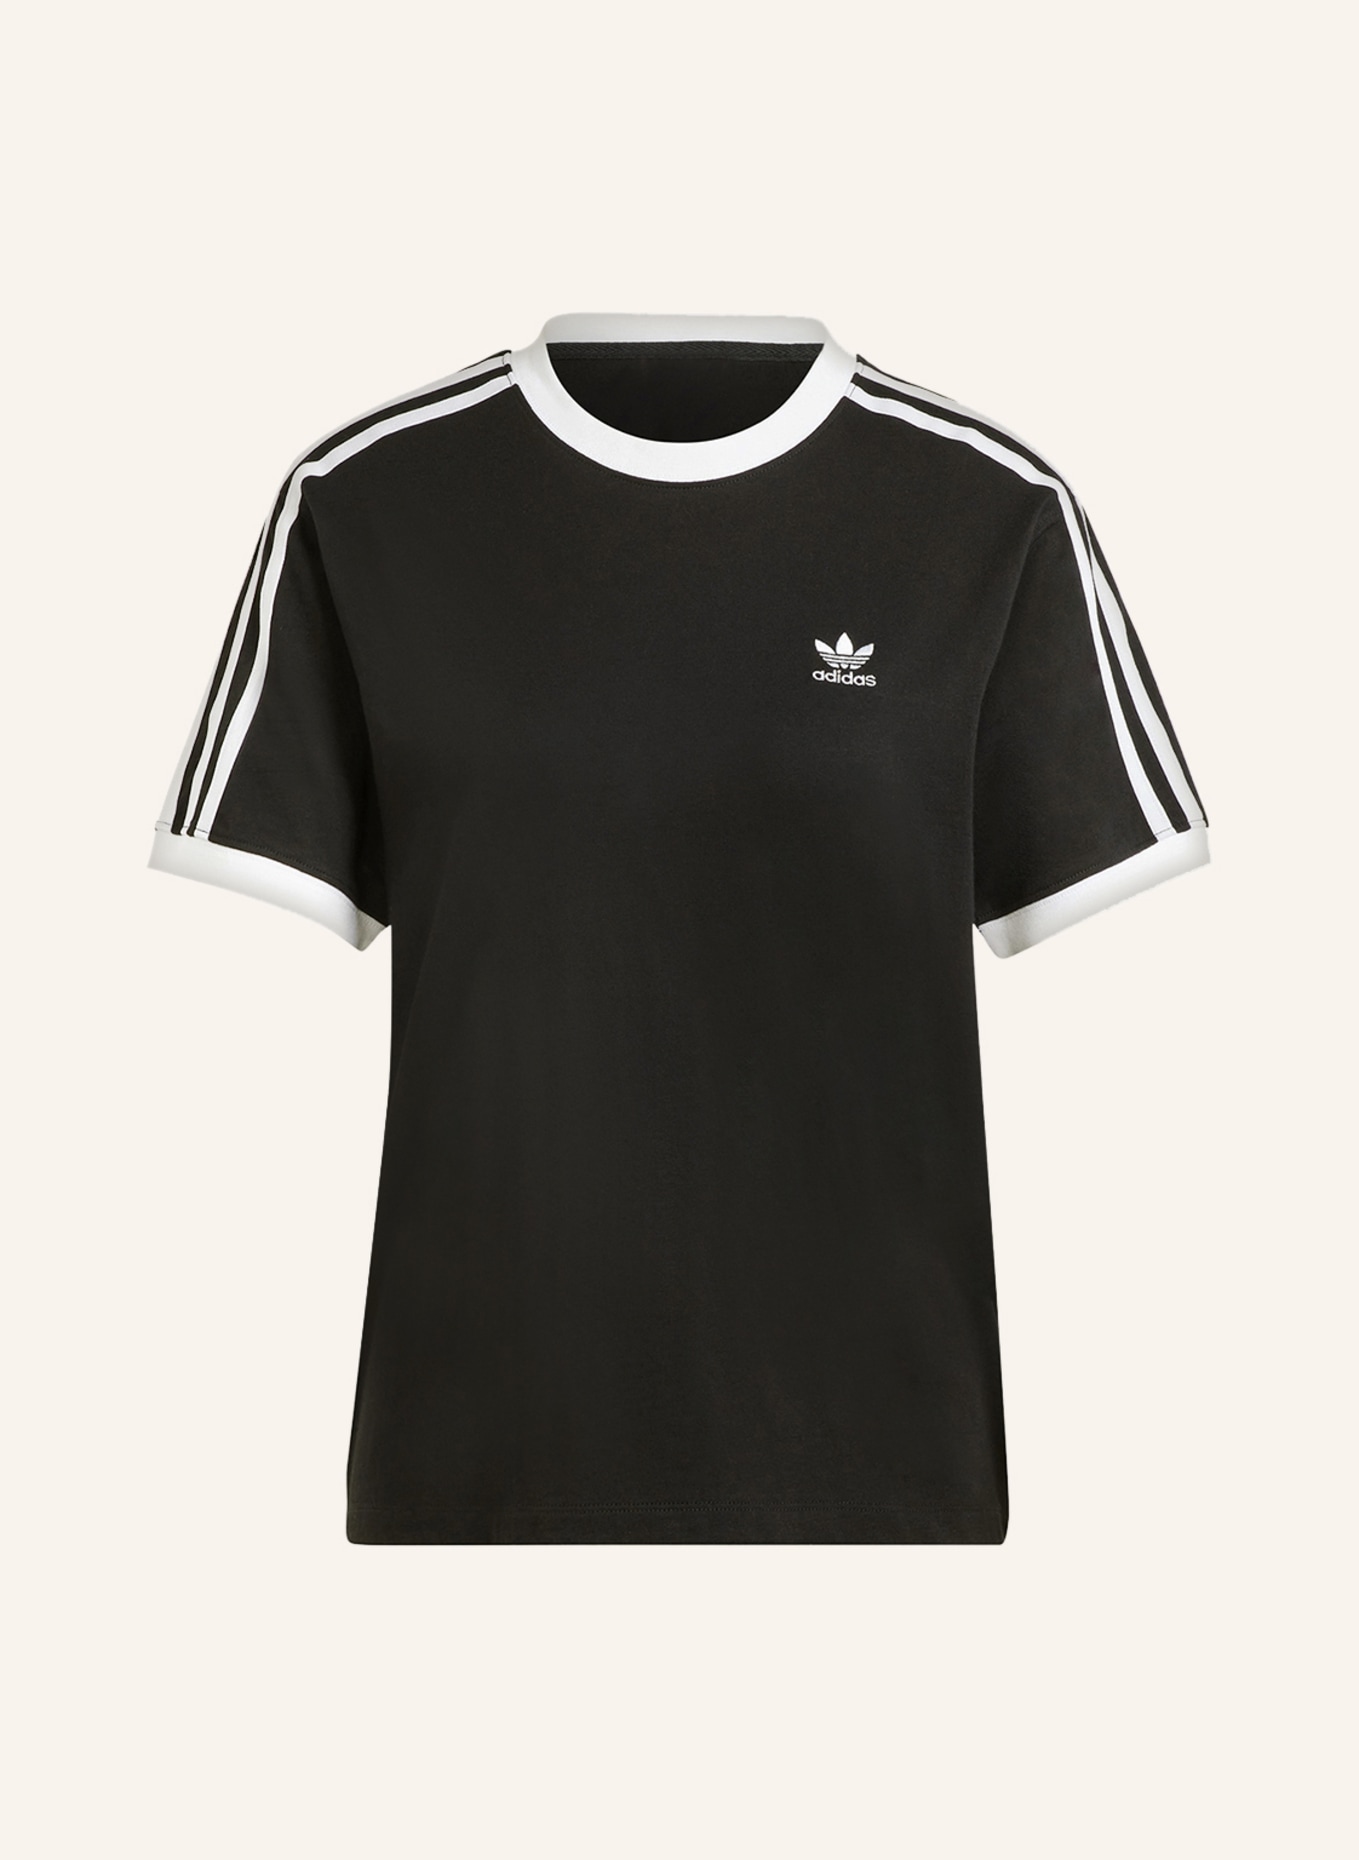 white black/ adidas Originals in T-shirt ADICOLOR CLASSICS